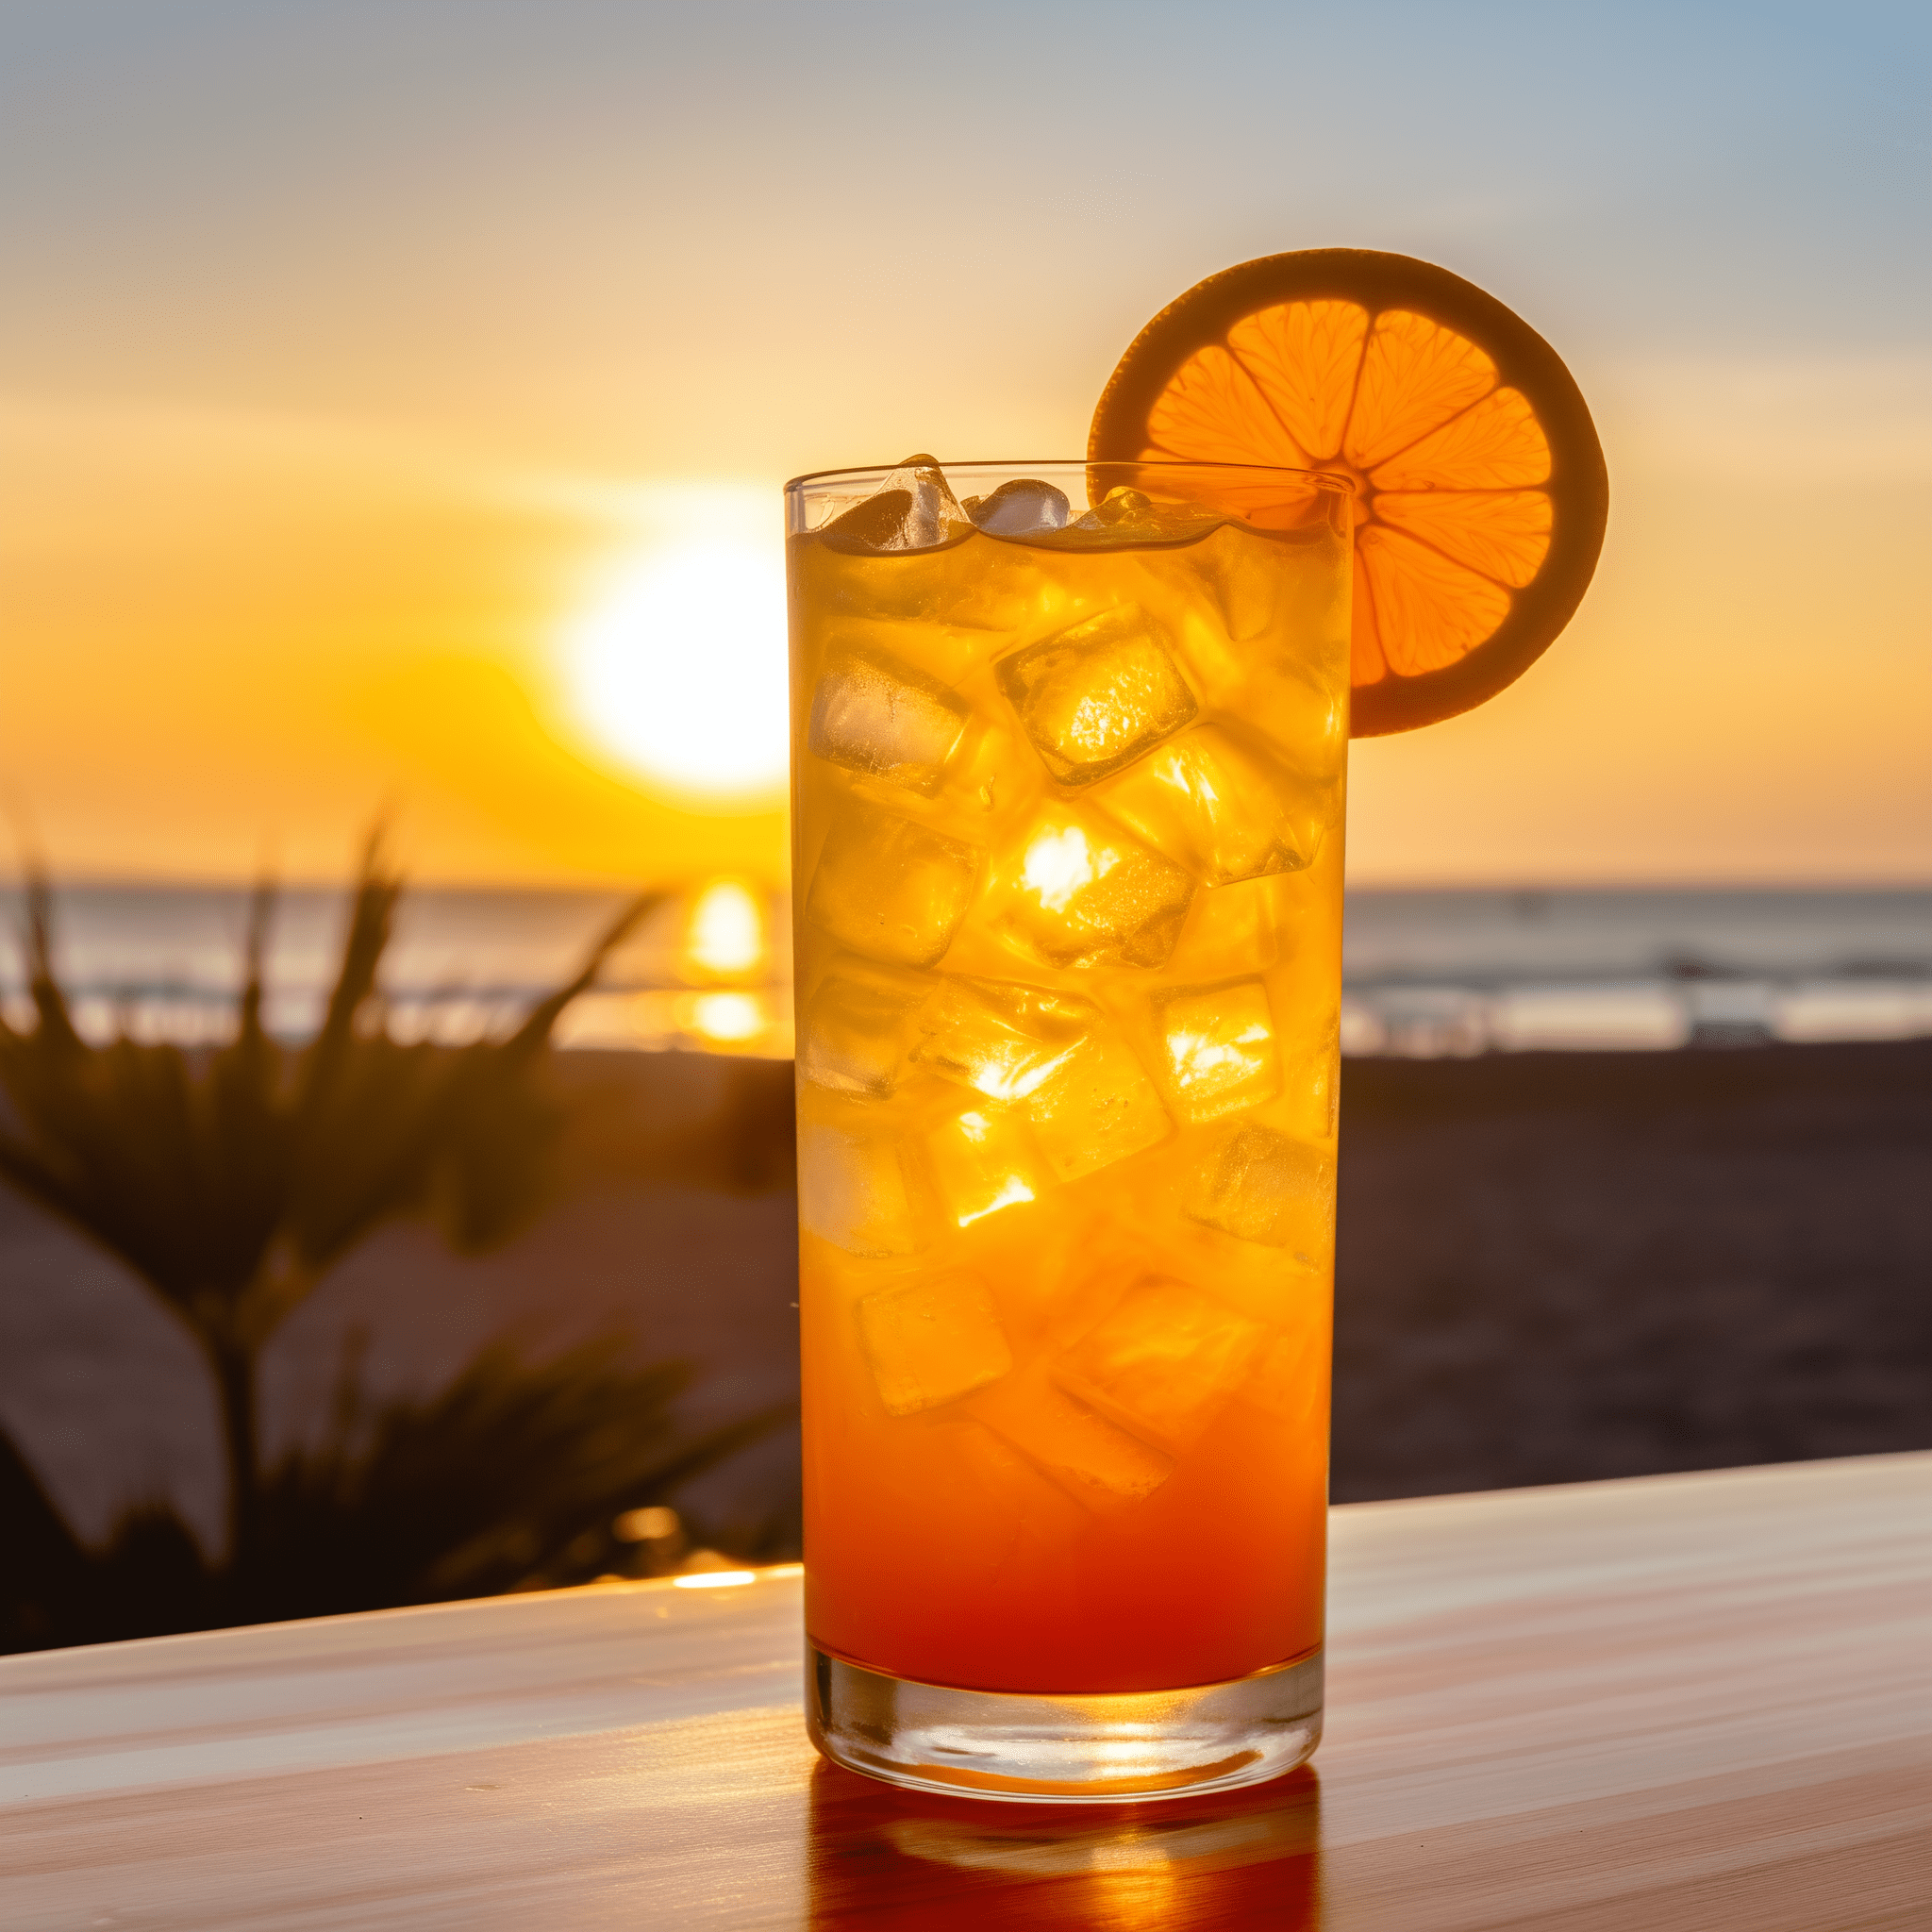 Sunset Rum Fizz Cóctel Receta - El Sunset Rum Fizz ofrece un equilibrio delicioso de dulzura de la soda de naranja y los sabores robustos del ron. Es efervescente, afrutado y tiene un ligero matiz de caramelo del ron, lo que lo convierte en un cóctel de fácil degustación con un toque tropical.